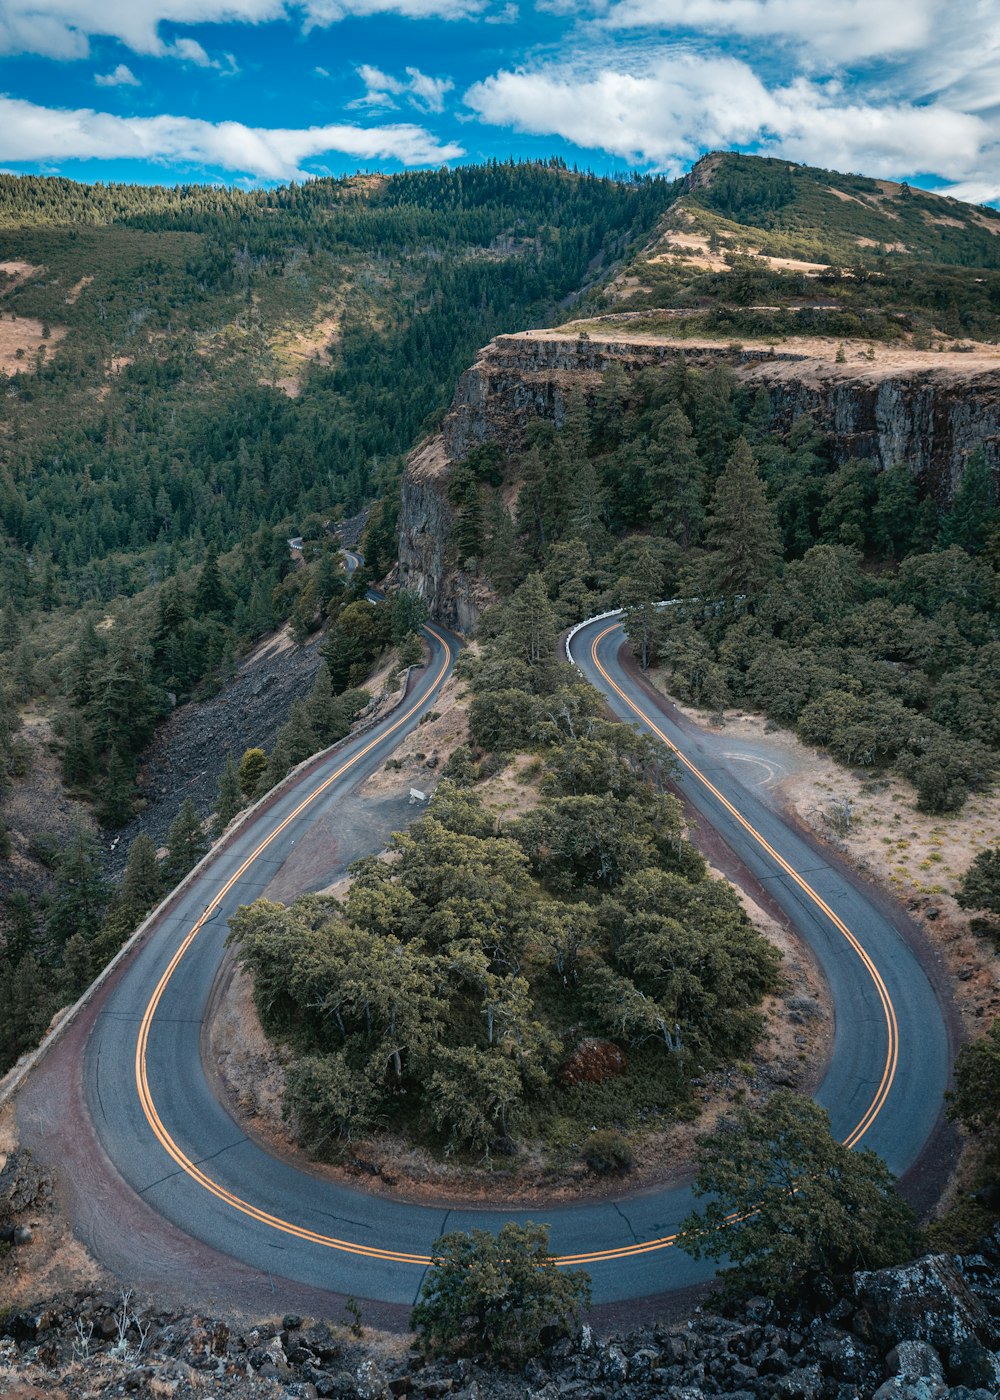 Vista aérea de la carretera entre los árboles durante el día